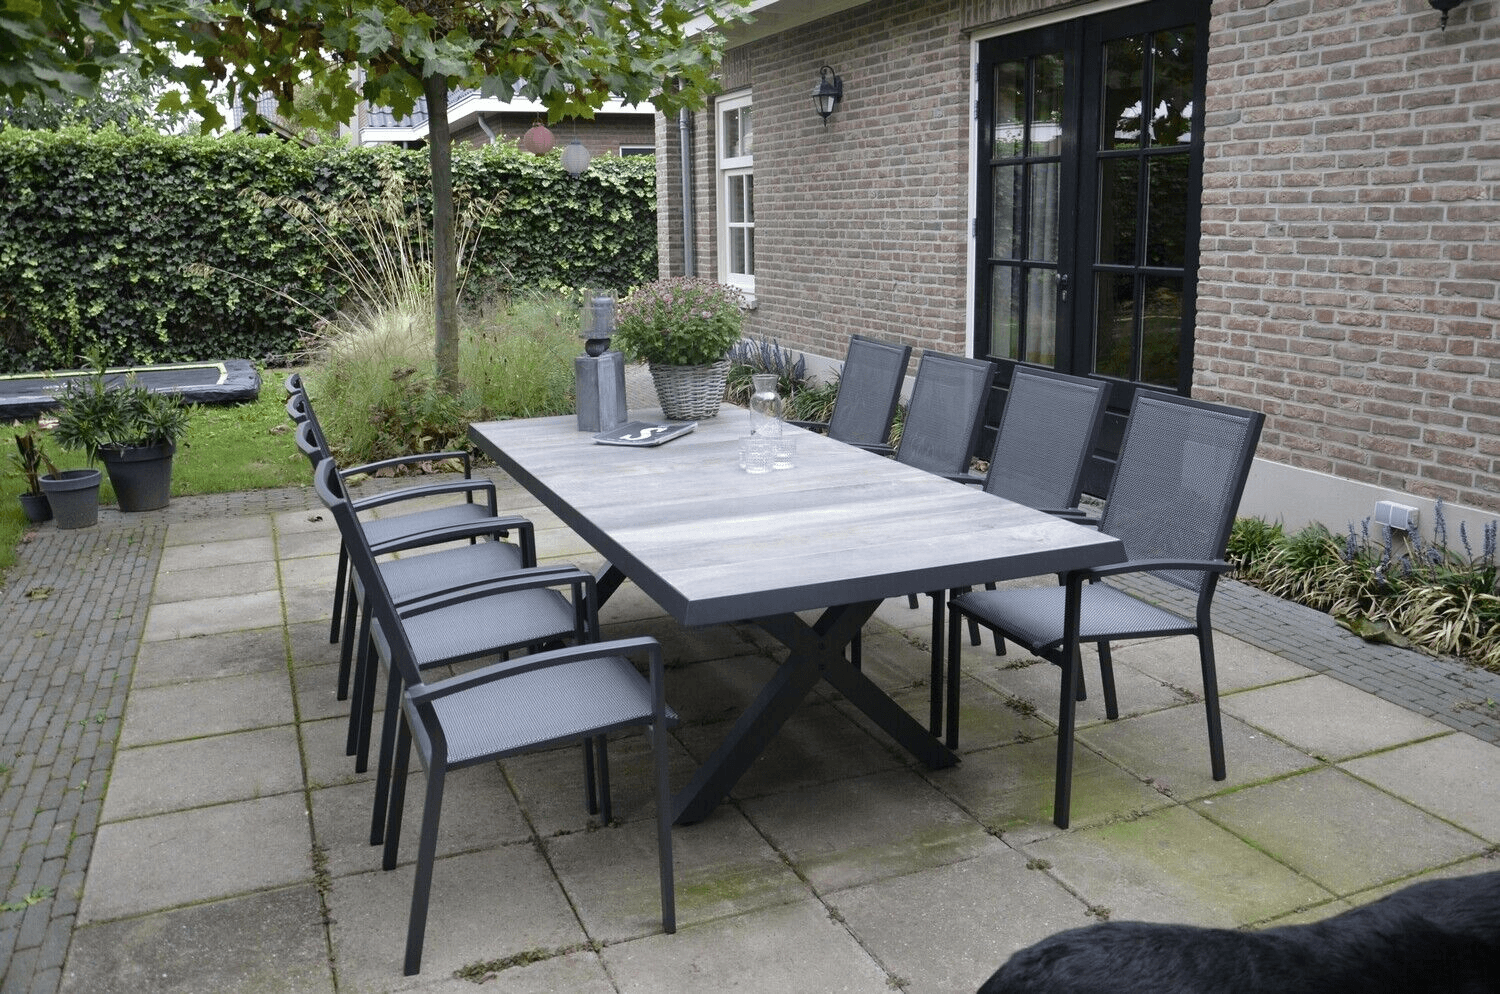 Designer Gartentisch Esstisch Tisch Castilla Negro mit Kreuzfuß 243x103cm - HomeDesign Knaus